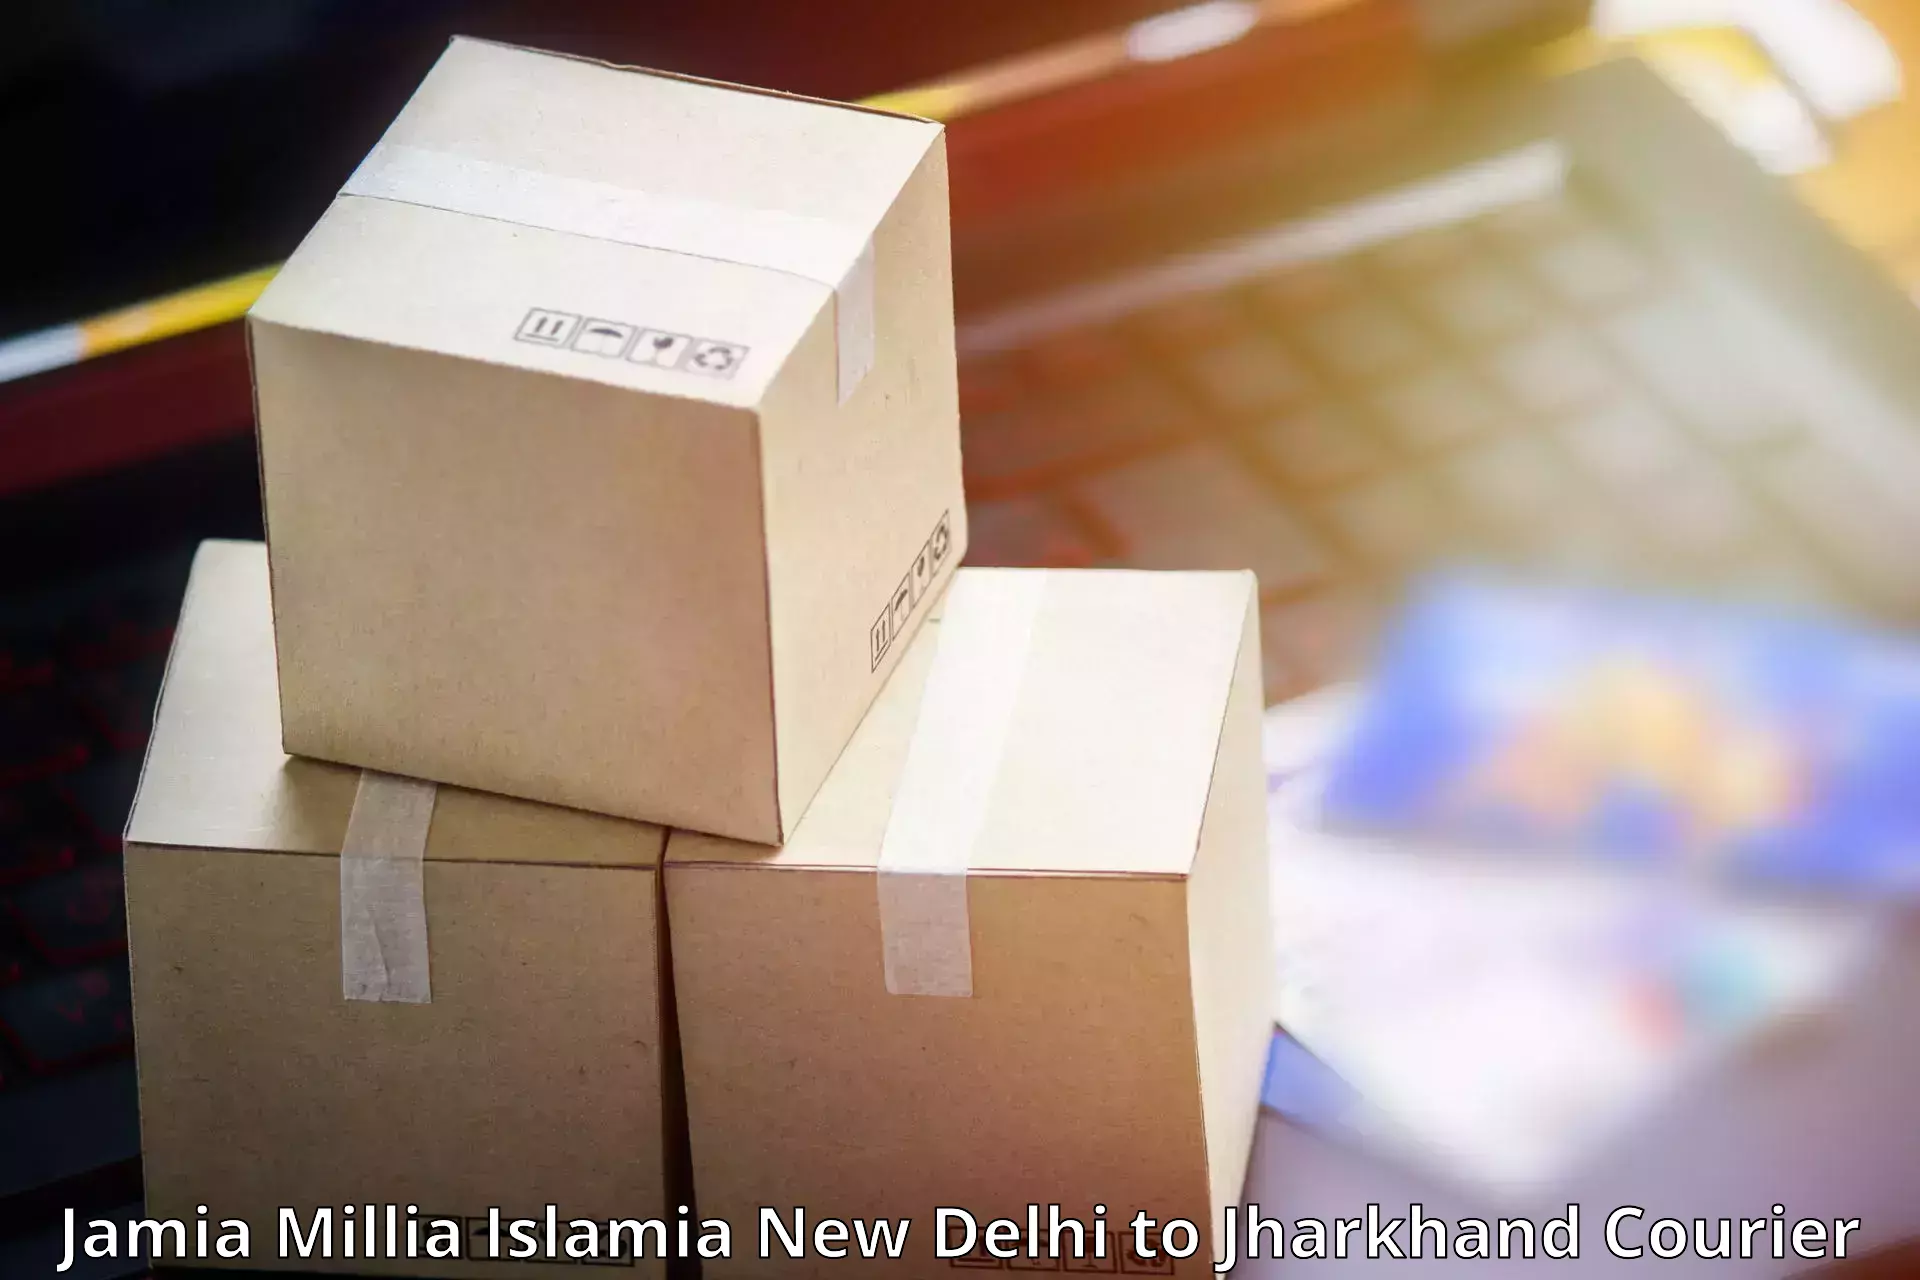 Seamless shipping experience Jamia Millia Islamia New Delhi to Hariharganj